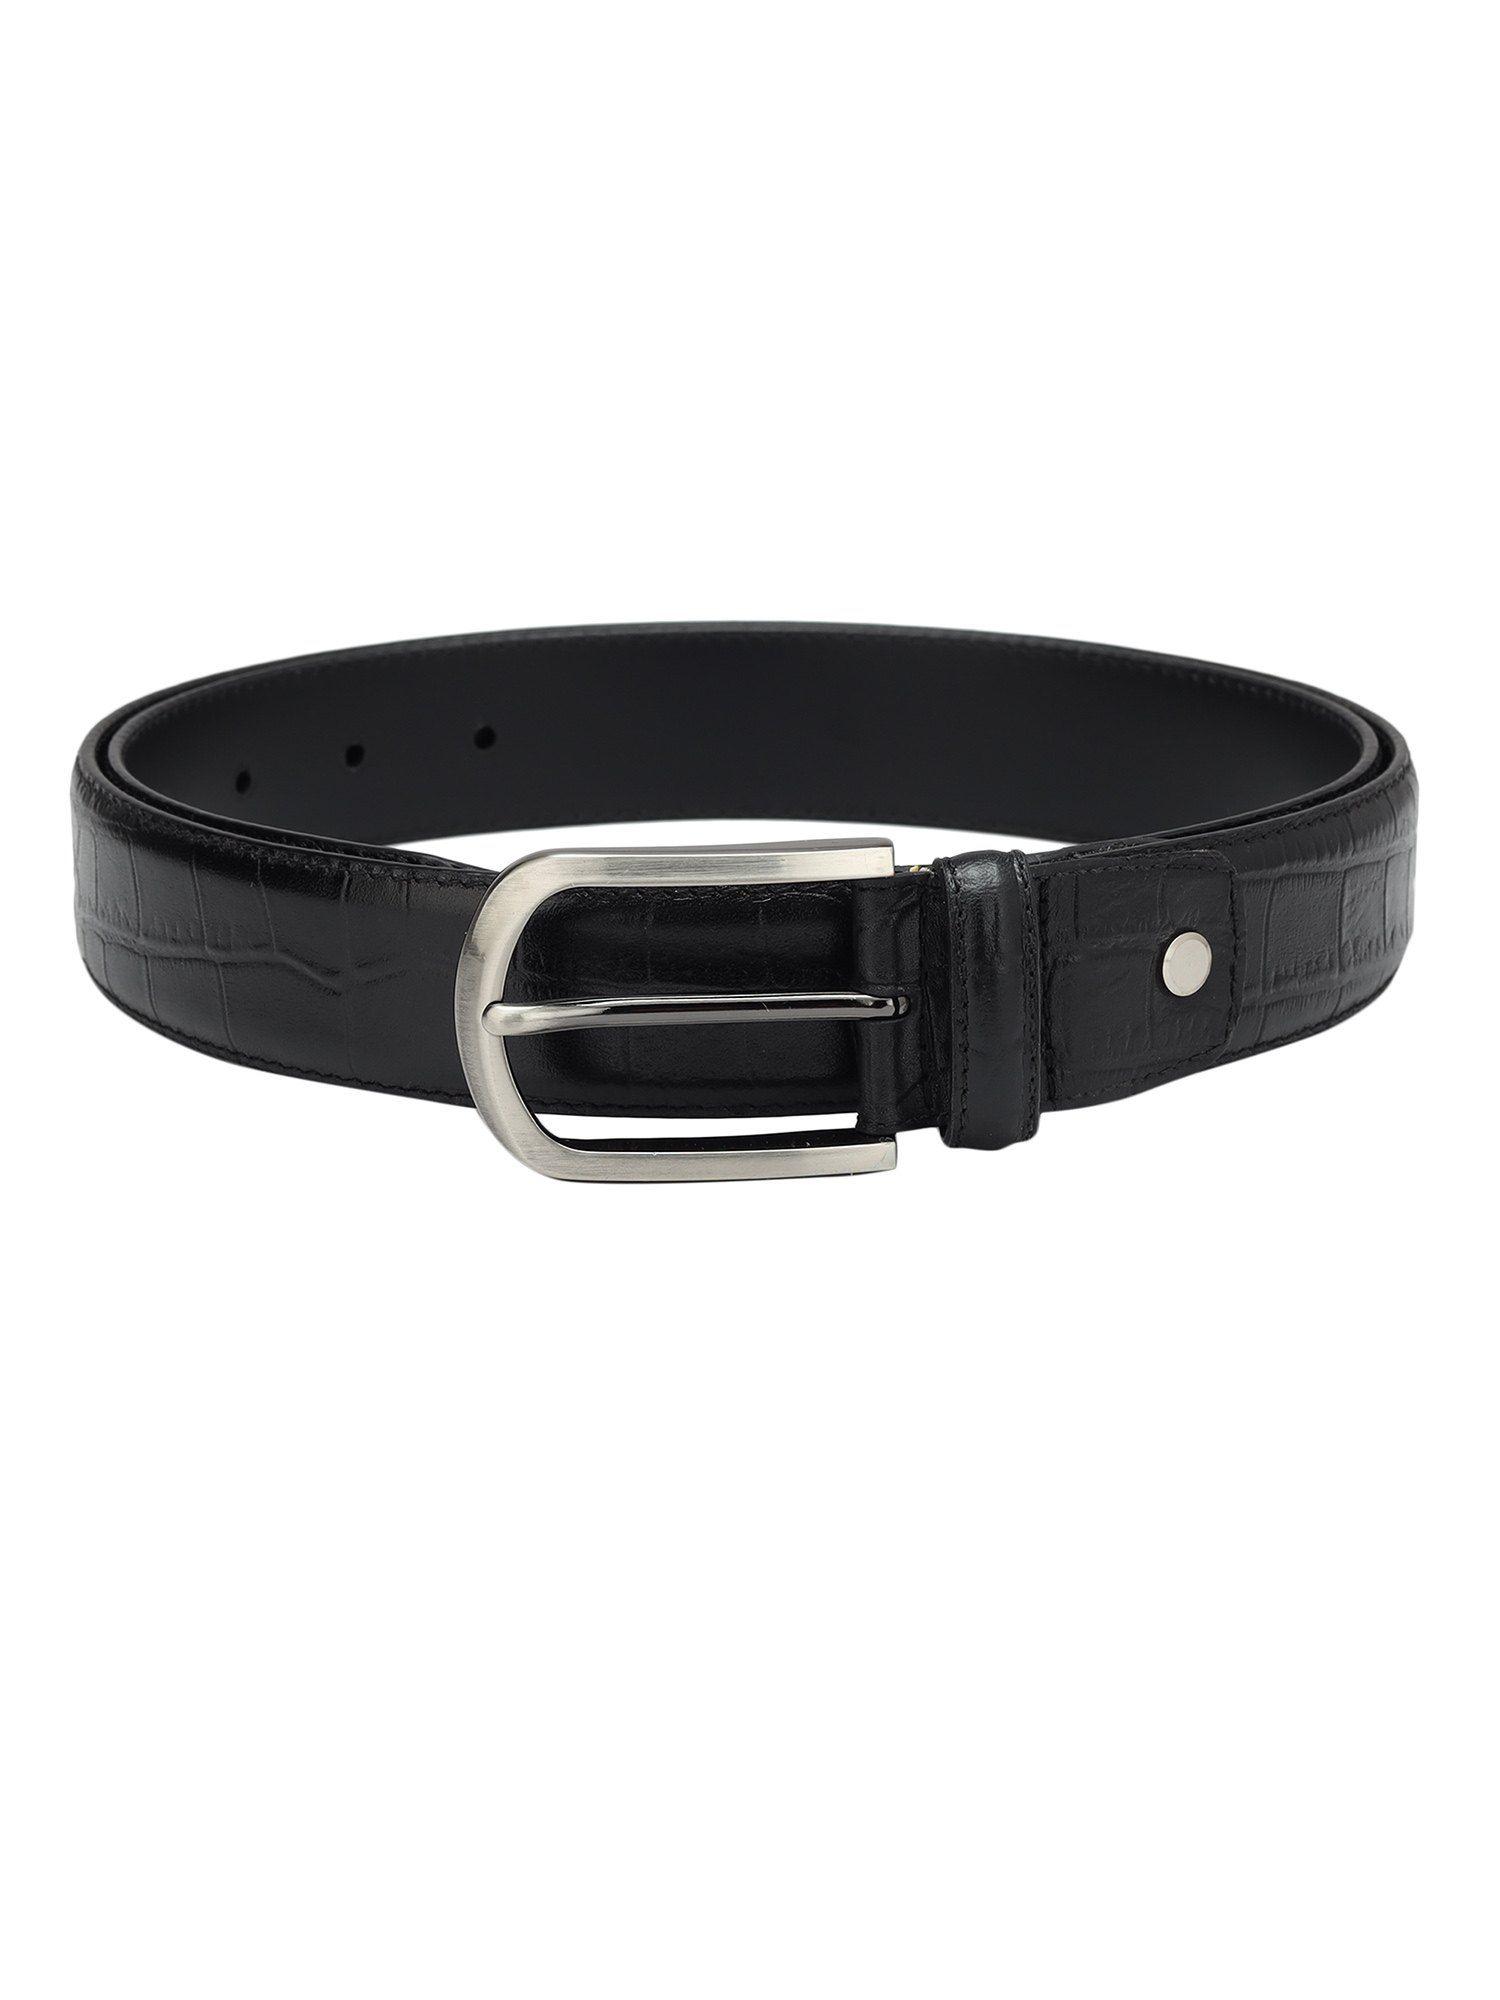 genuine leather black men's belt